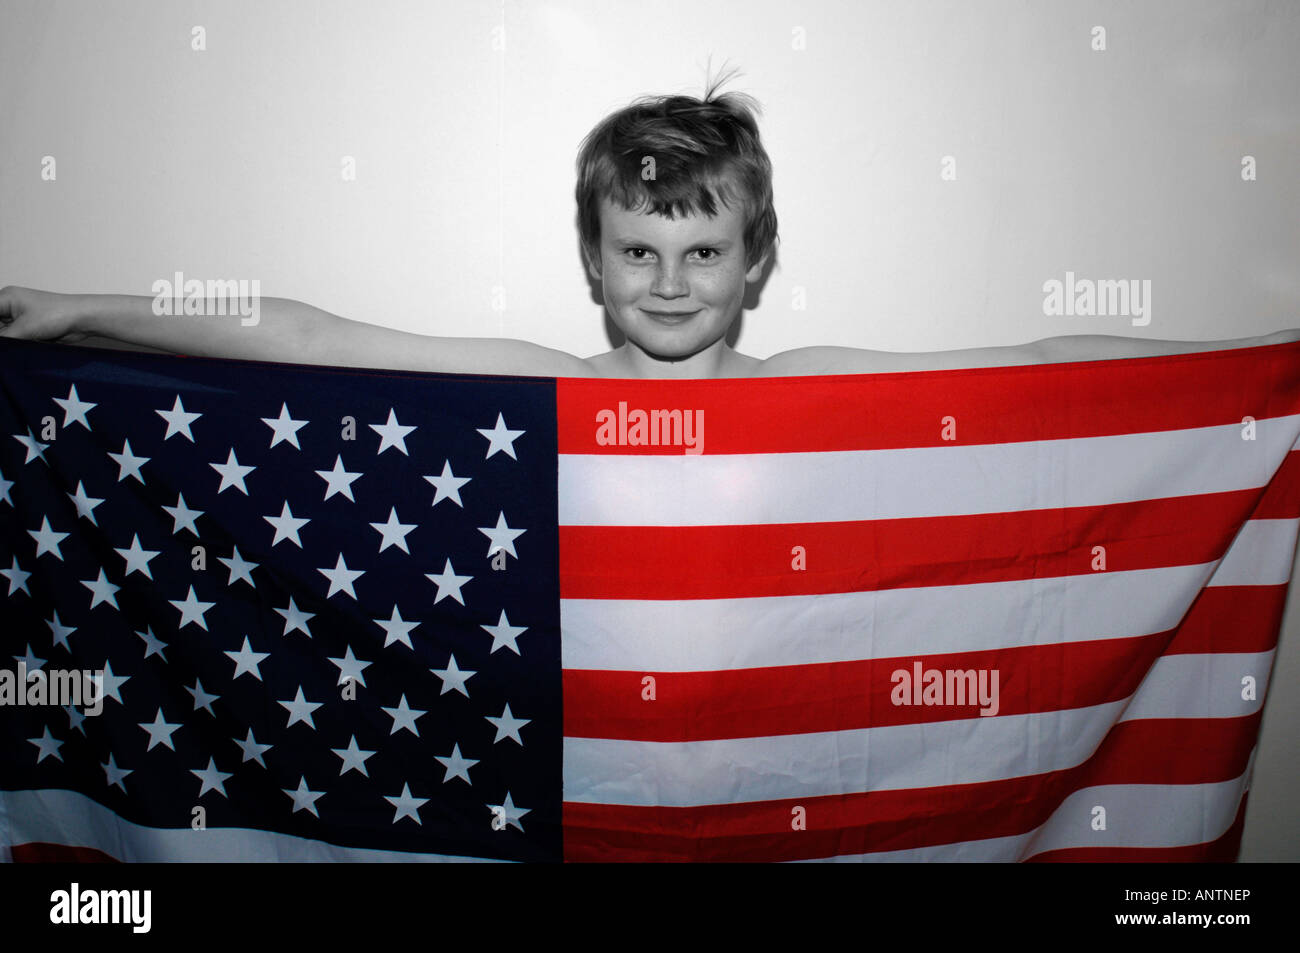 Un garçon de 13ans debout derrière le drapeau américain Stars & Stripes qu'il retient. Banque D'Images